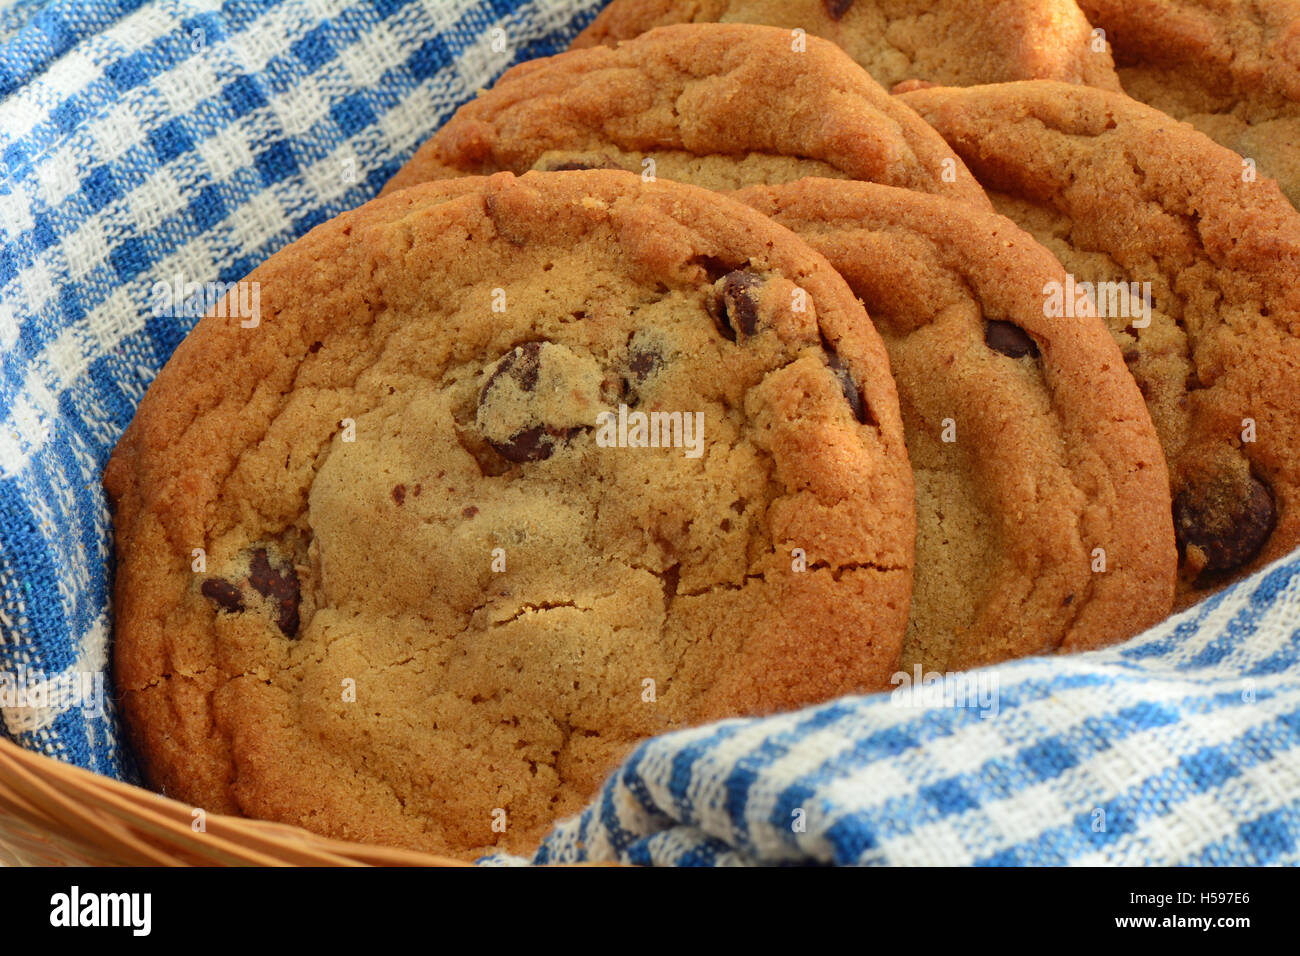 Frisch gebackene Schokoladenkekse auf blauen und weißen Küchentuch im Querformat.  Makro mit flachen DOF Stockfoto